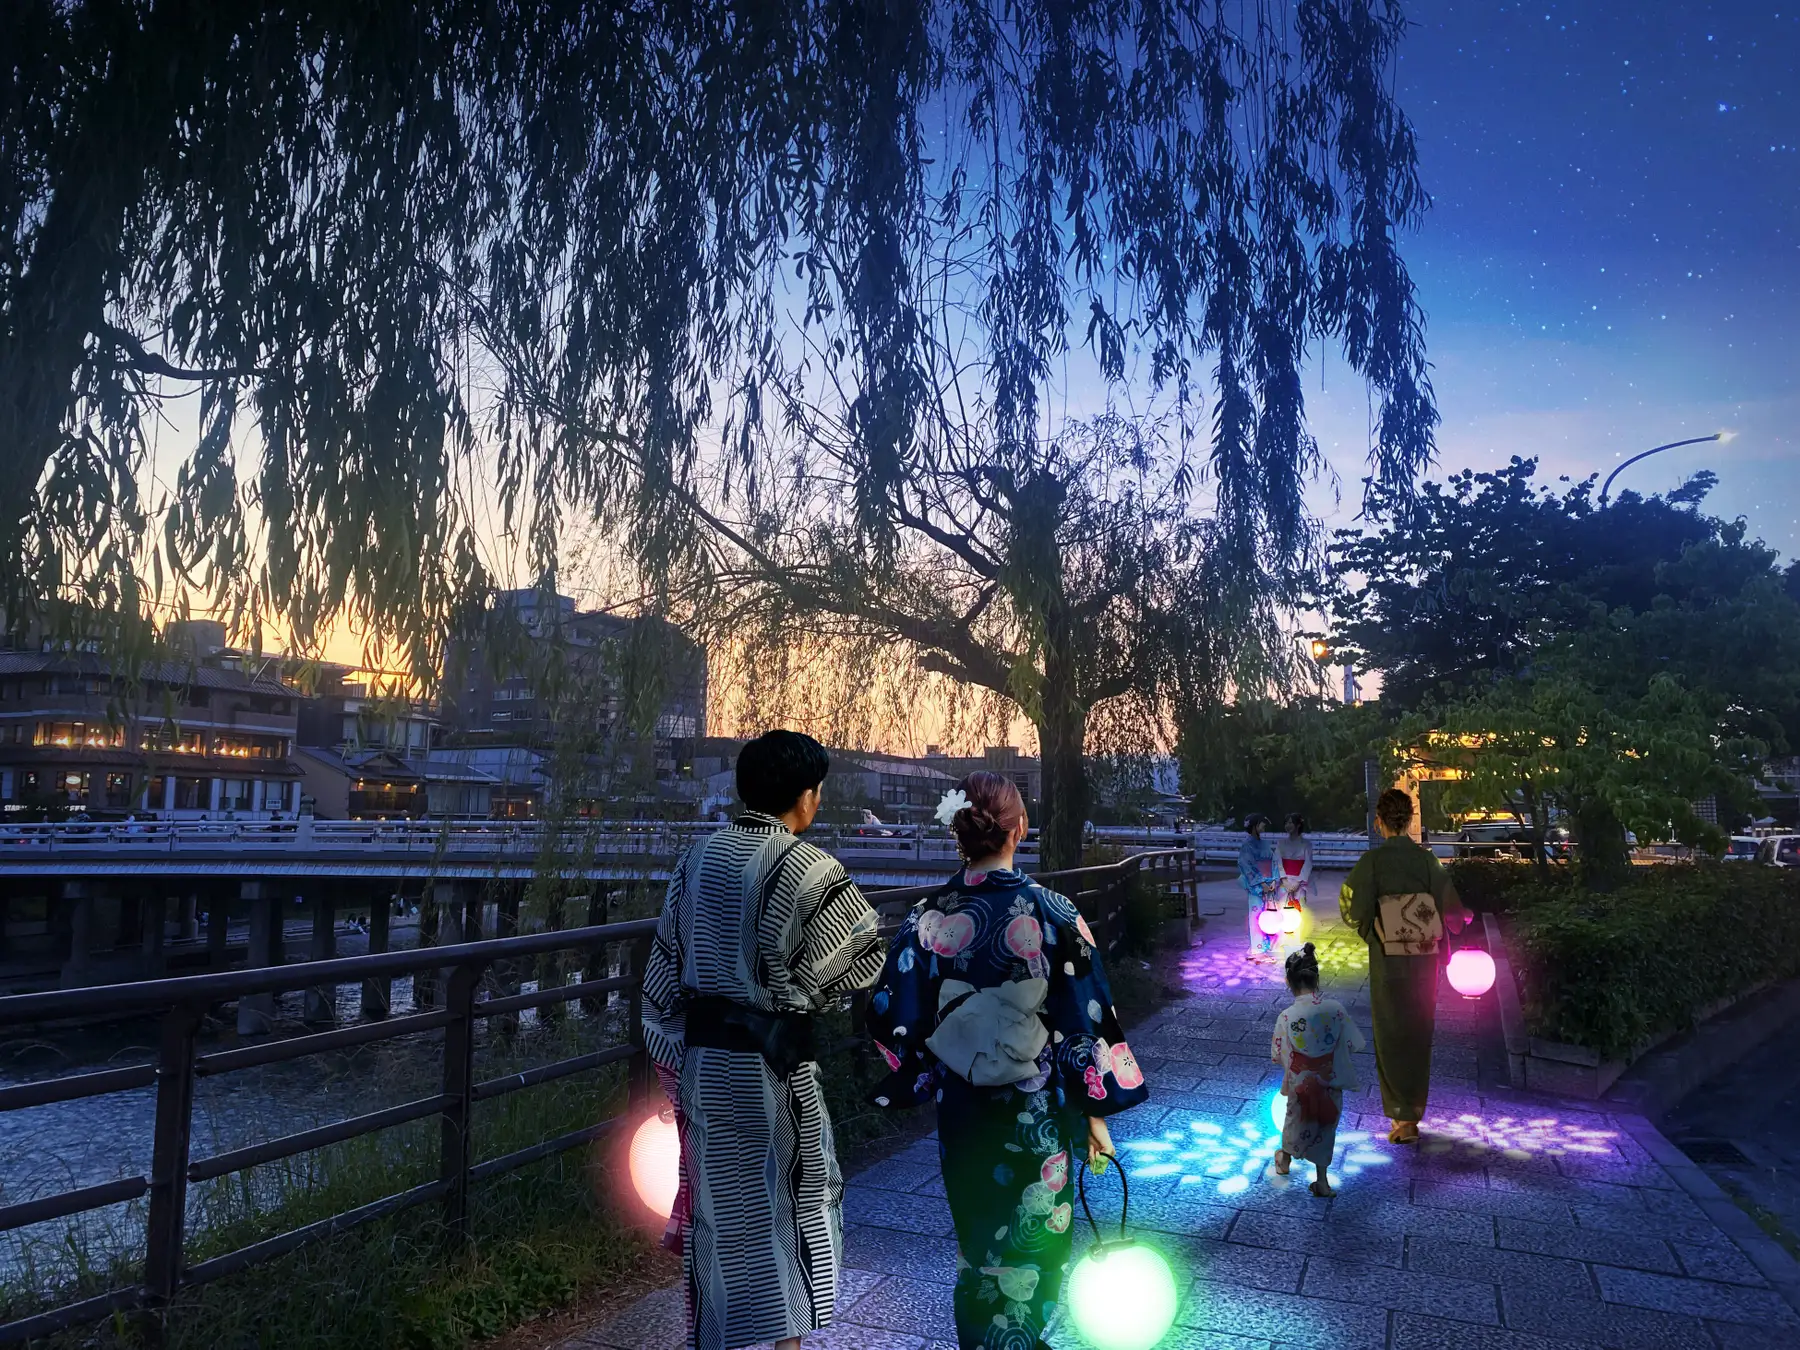 ネイキッドのアート提灯で京都の夜を楽しむ